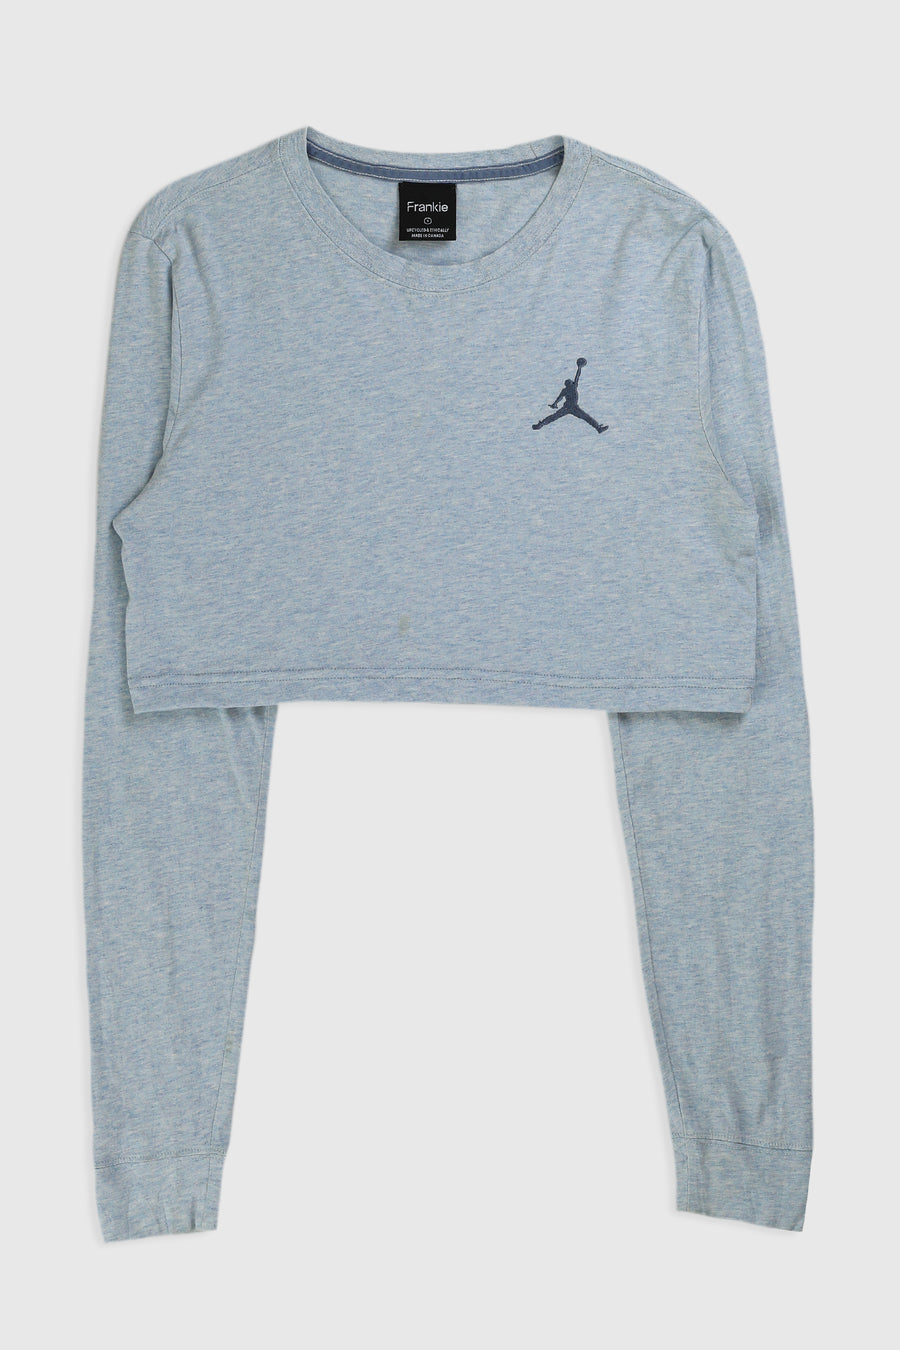 Rework Nike Air Jordan Crop Long Sleeve Tee - S